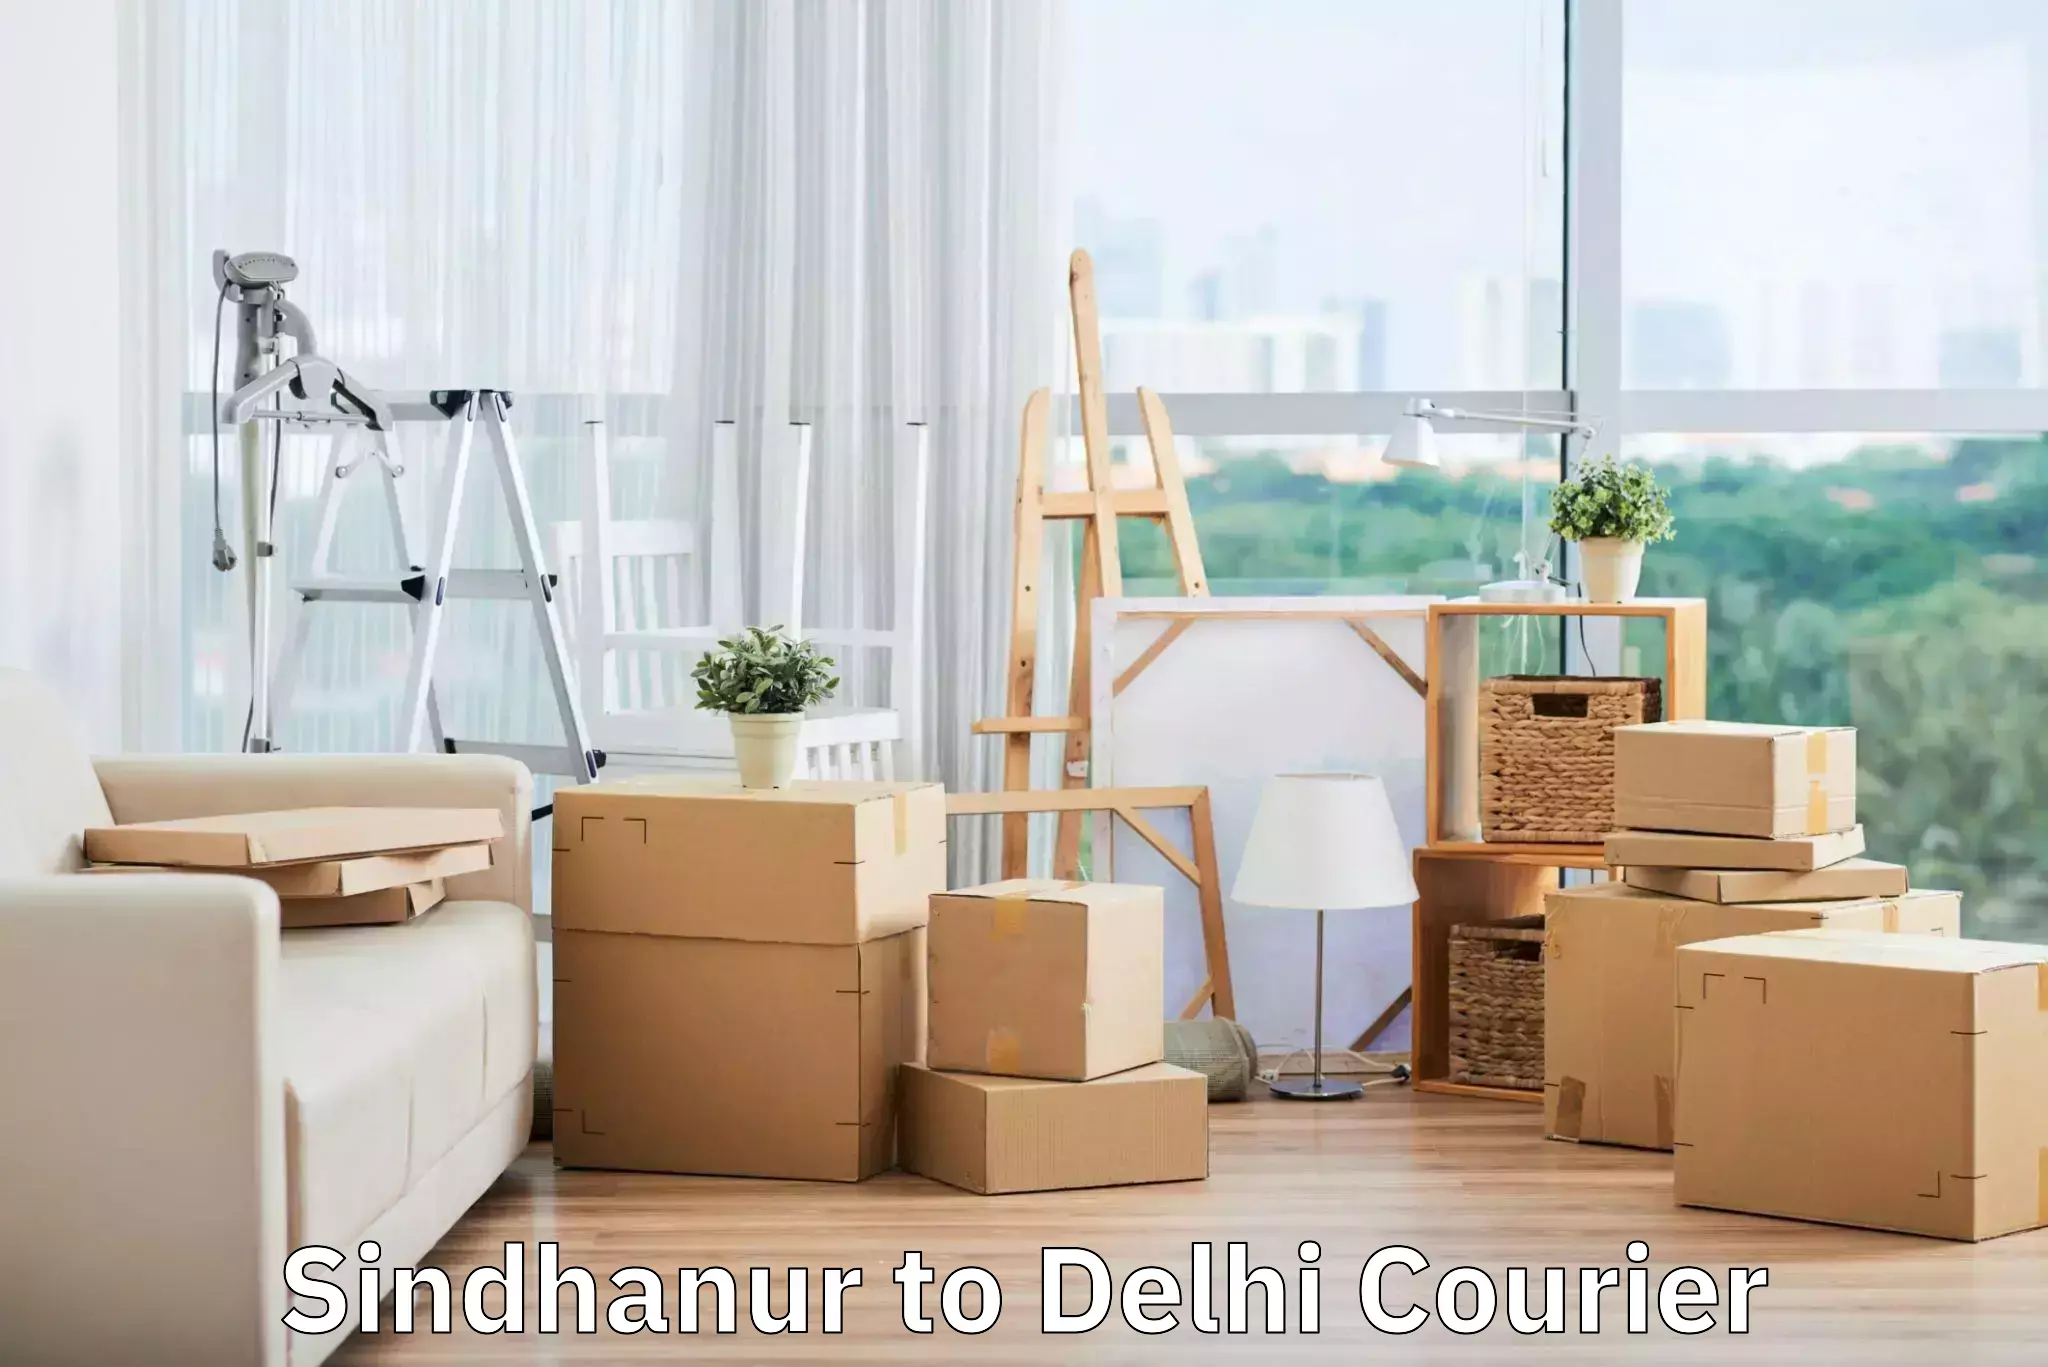 Multi-destination luggage transport in Sindhanur to Delhi